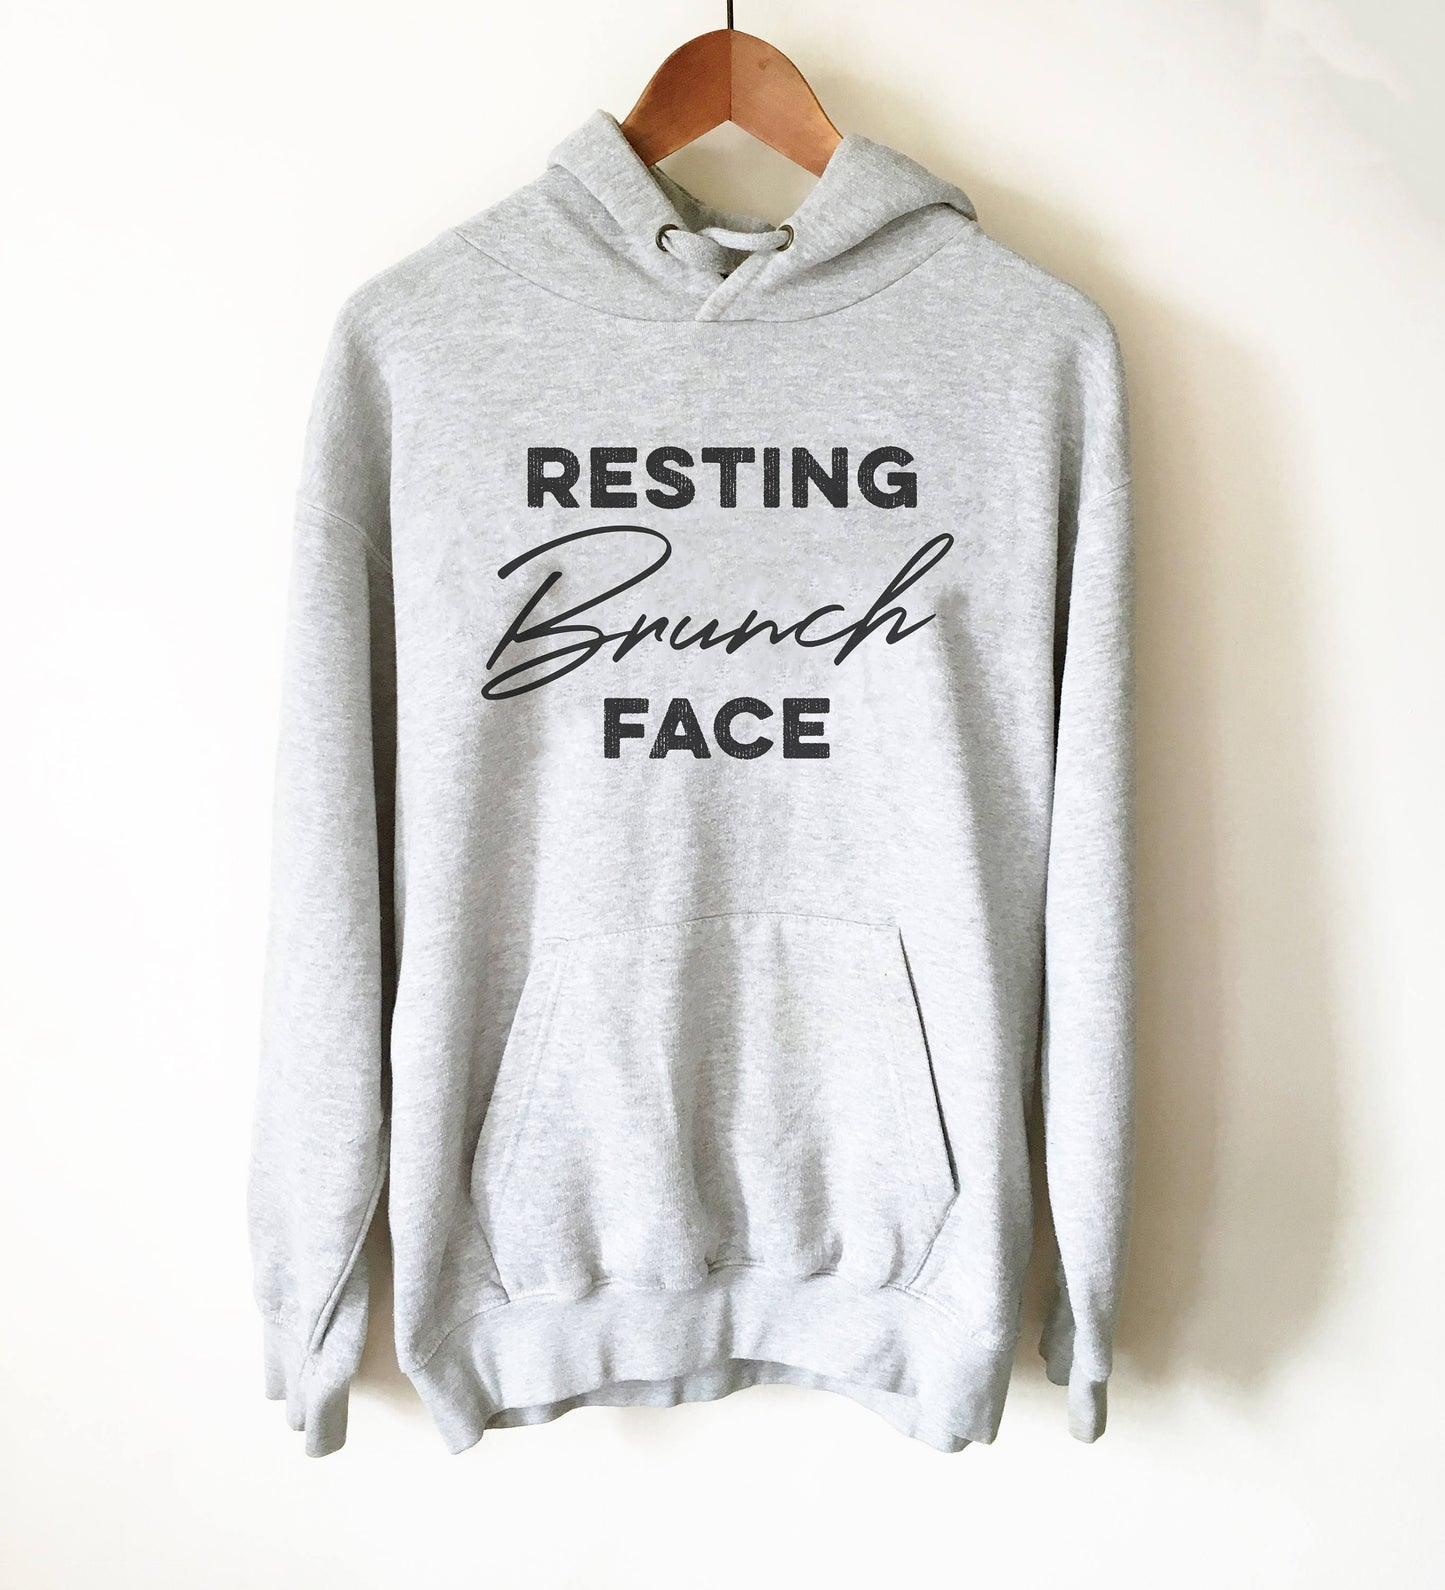 Resting Brunch Face Hoodie - Brunch shirt | Sunday brunch shirt | Brunch and bubbly | Funny brunch shirt | Breakfast shirt